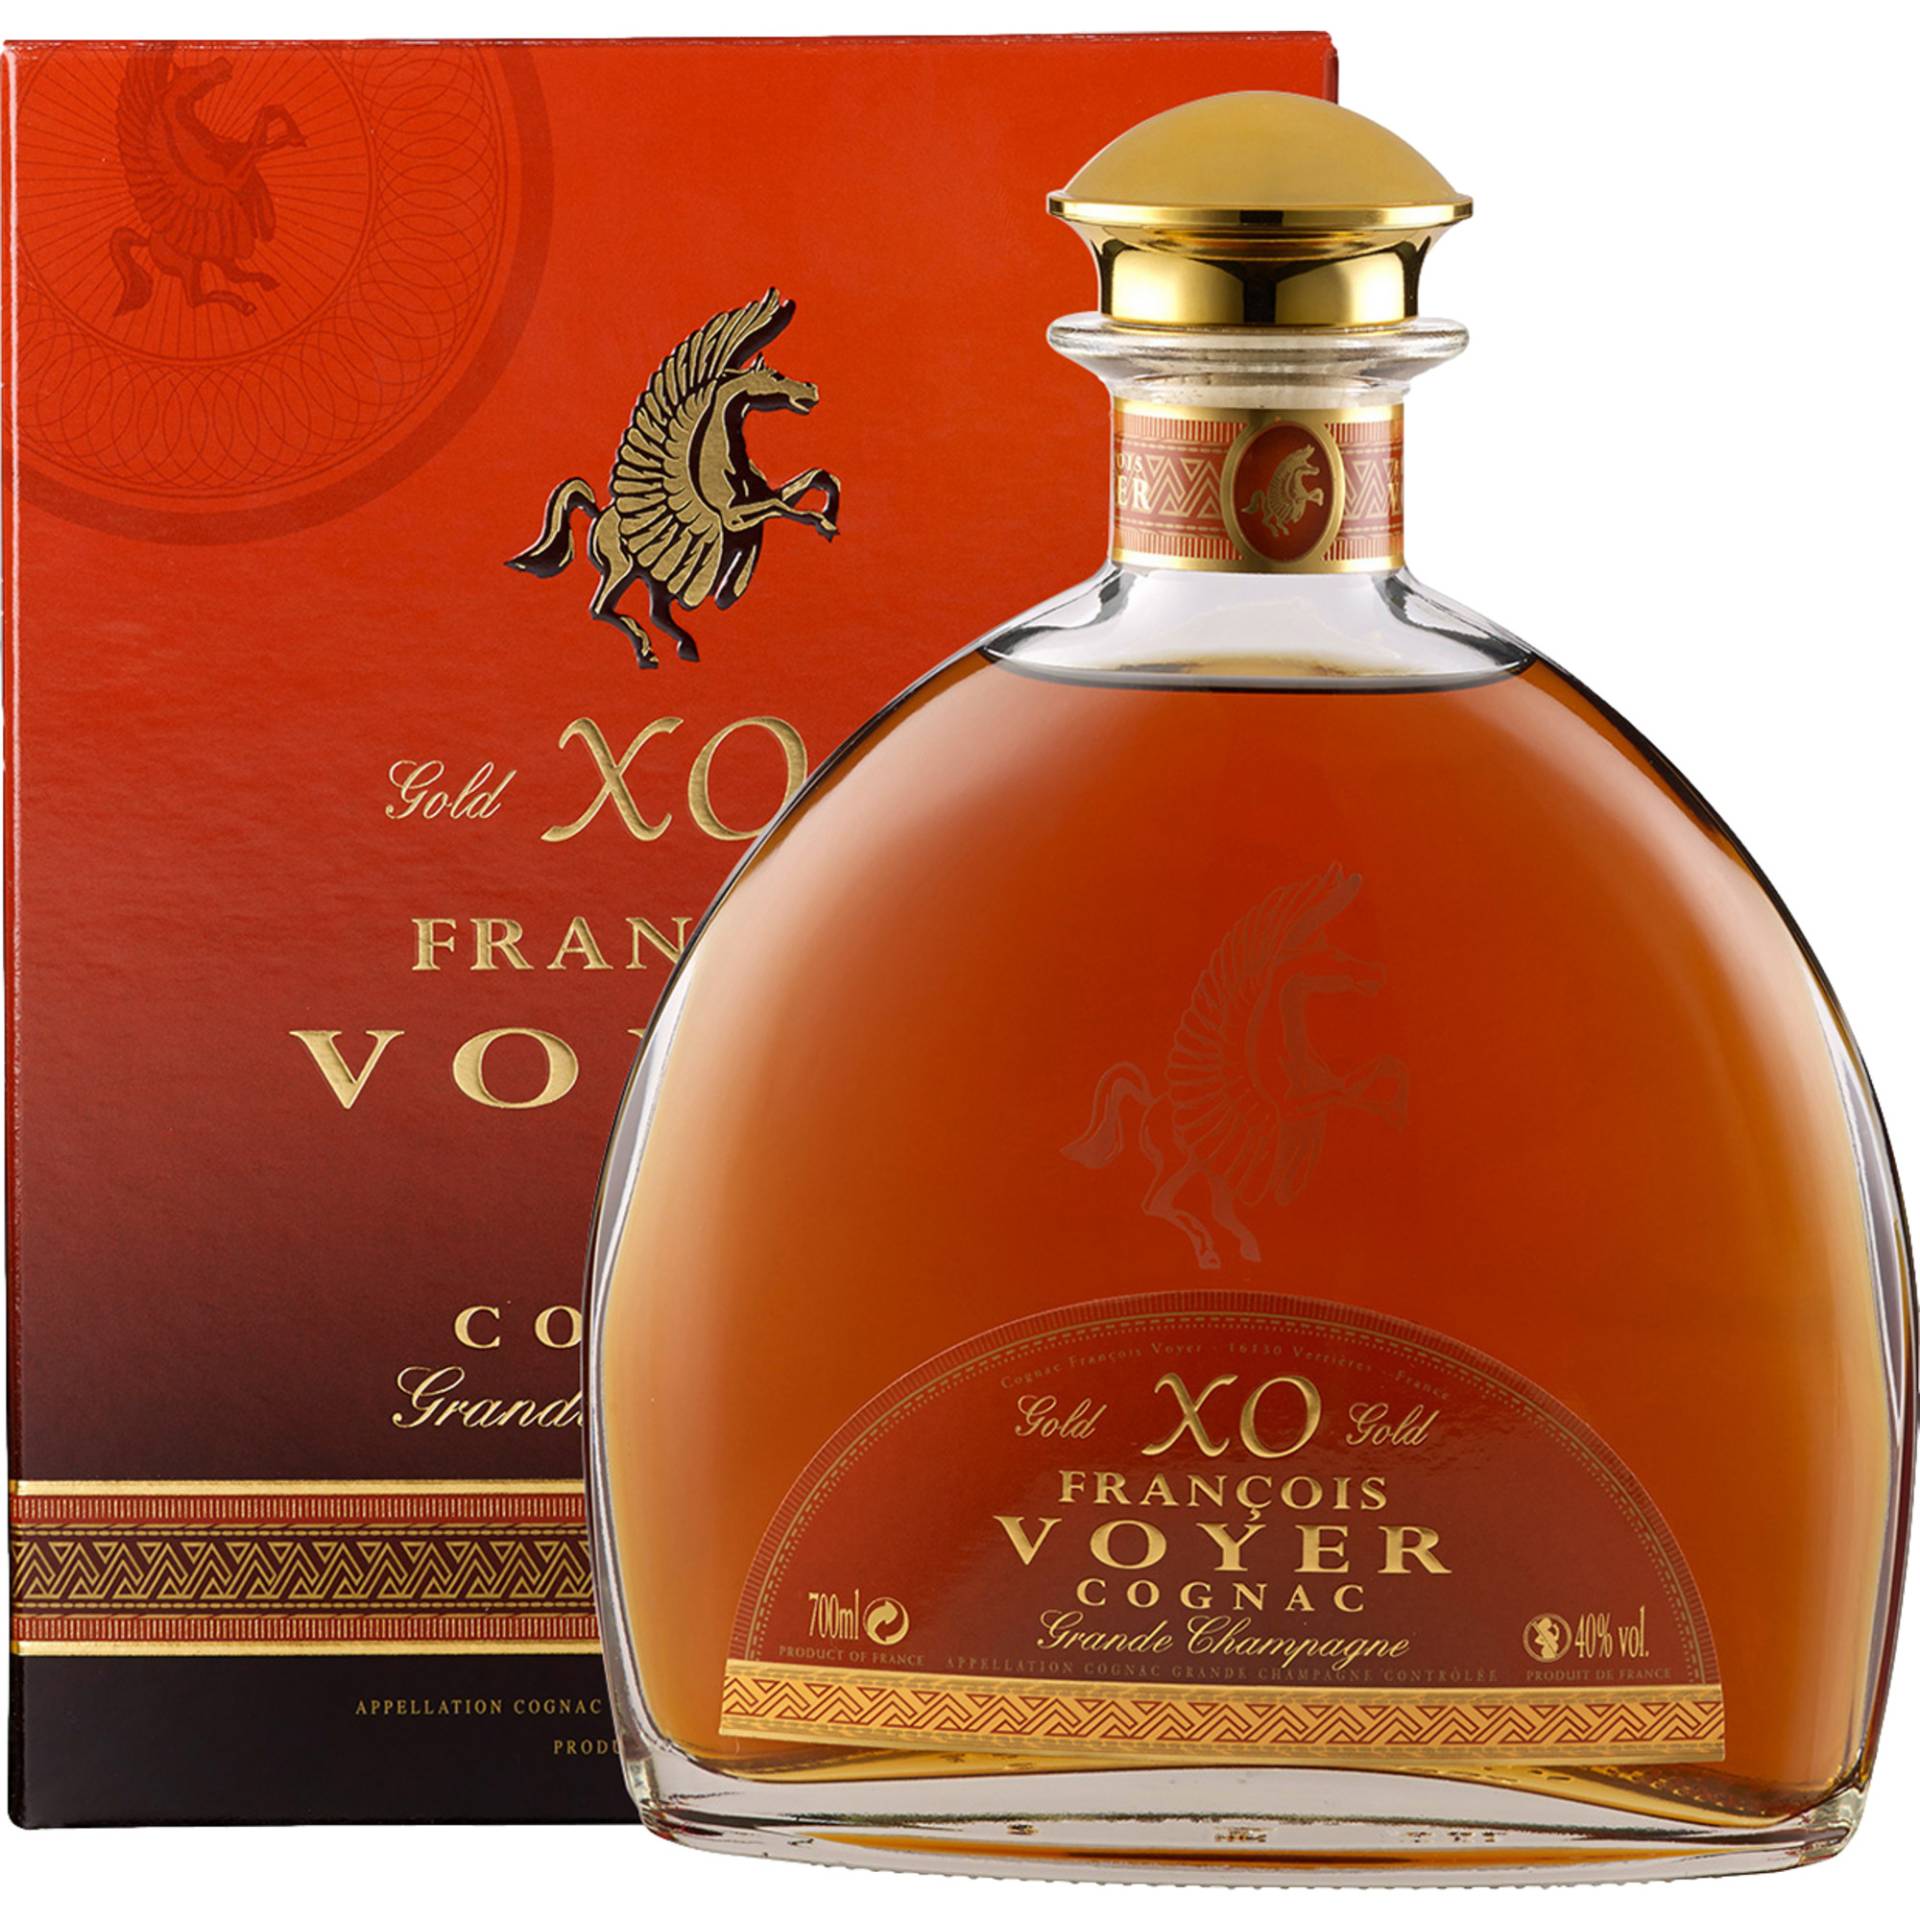 XO François Voyer Cognac Grande Champagne, Cognac AOP, 0,7 L, 40% Vol, Spirituosen von Cognac Francois Voyer,   FR 16130 Verriéres